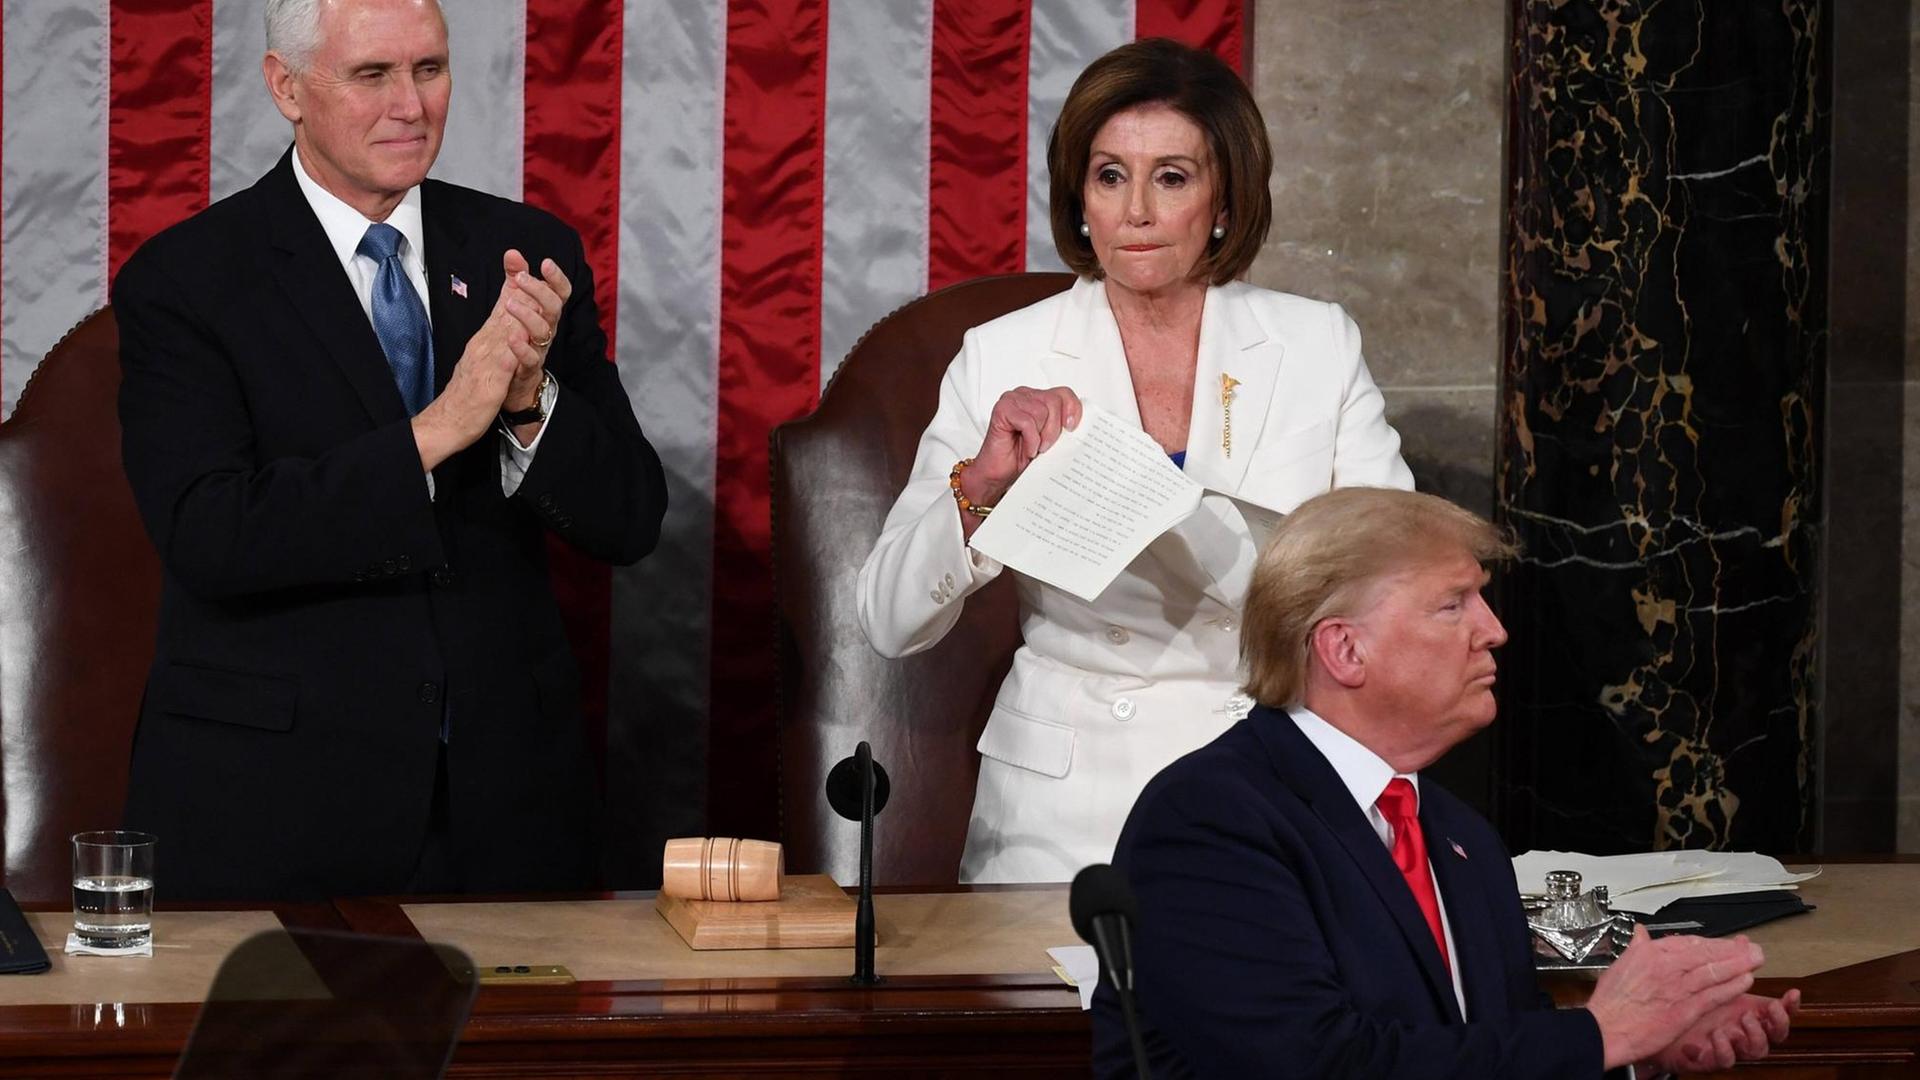 Die Sprecherin des US-Repräsentantenhauses Nancy Pelosi zerreißt nach der Rede zur Lage der Nation von Präsident Donald Trump eine Abschrift von dessen Ansprache